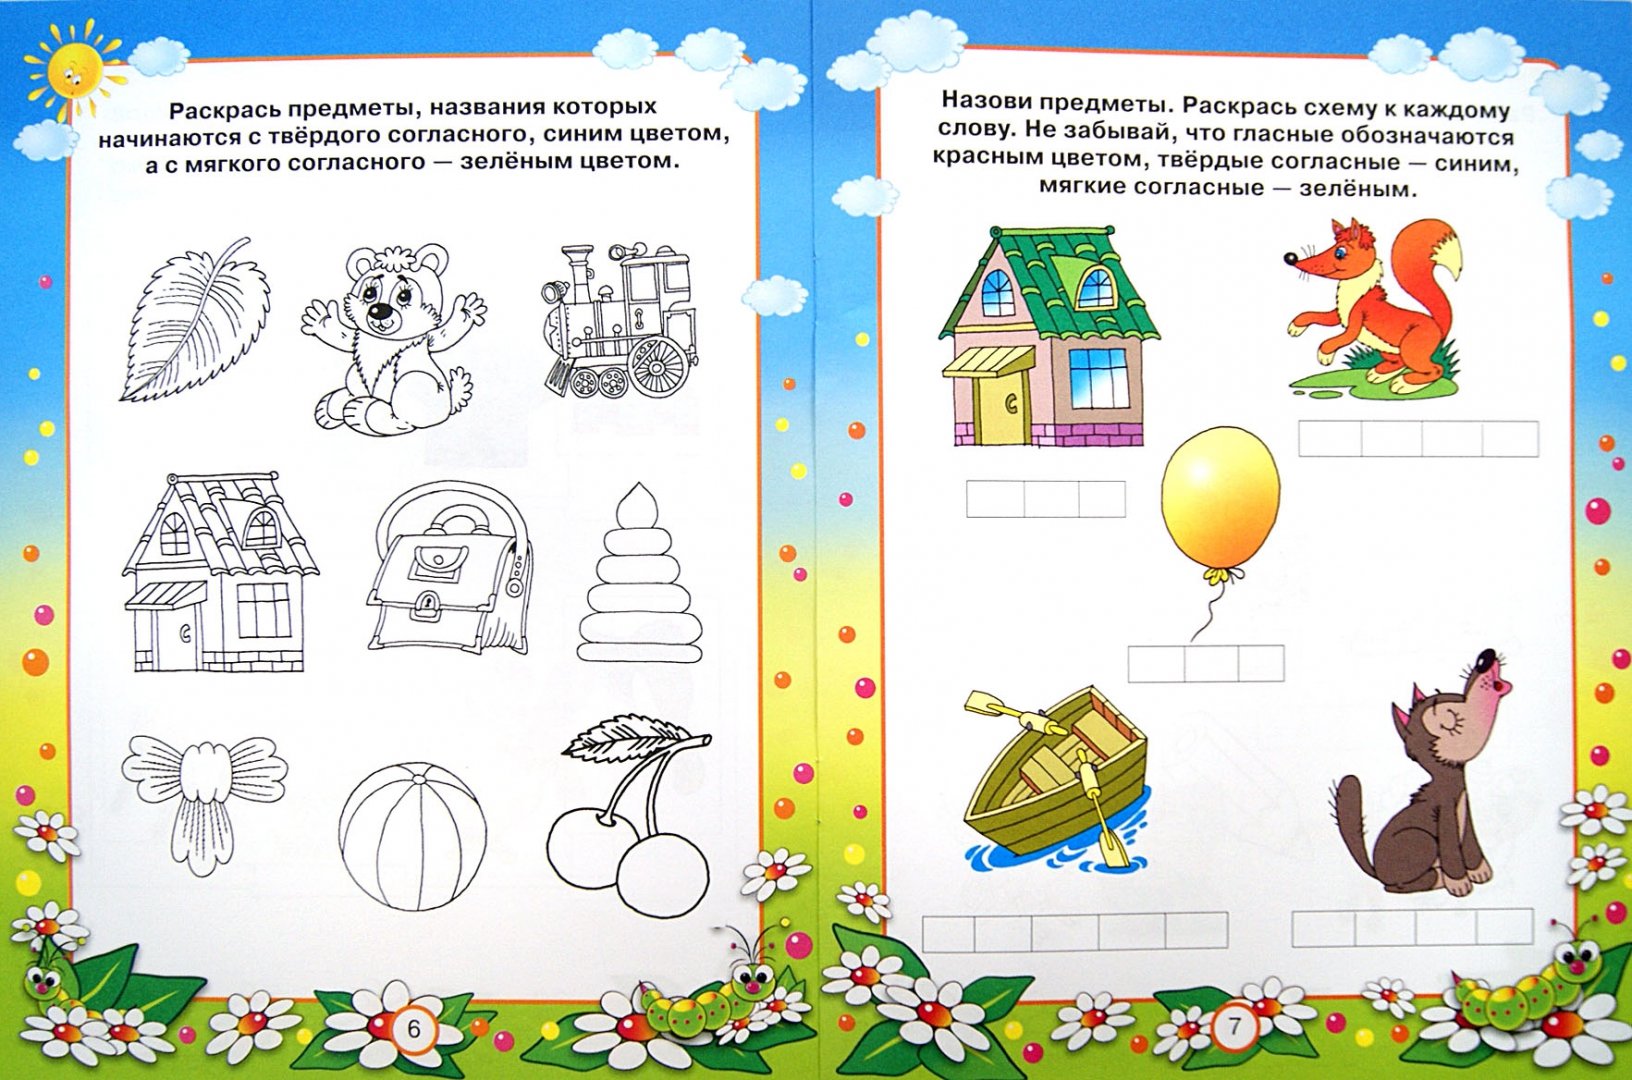 Иллюстрация 1 из 5 для Обучаемся грамоте. Для 4-5 лет - Гаврина, Топоркова, Кутявина | Лабиринт - книги. Источник: Лабиринт